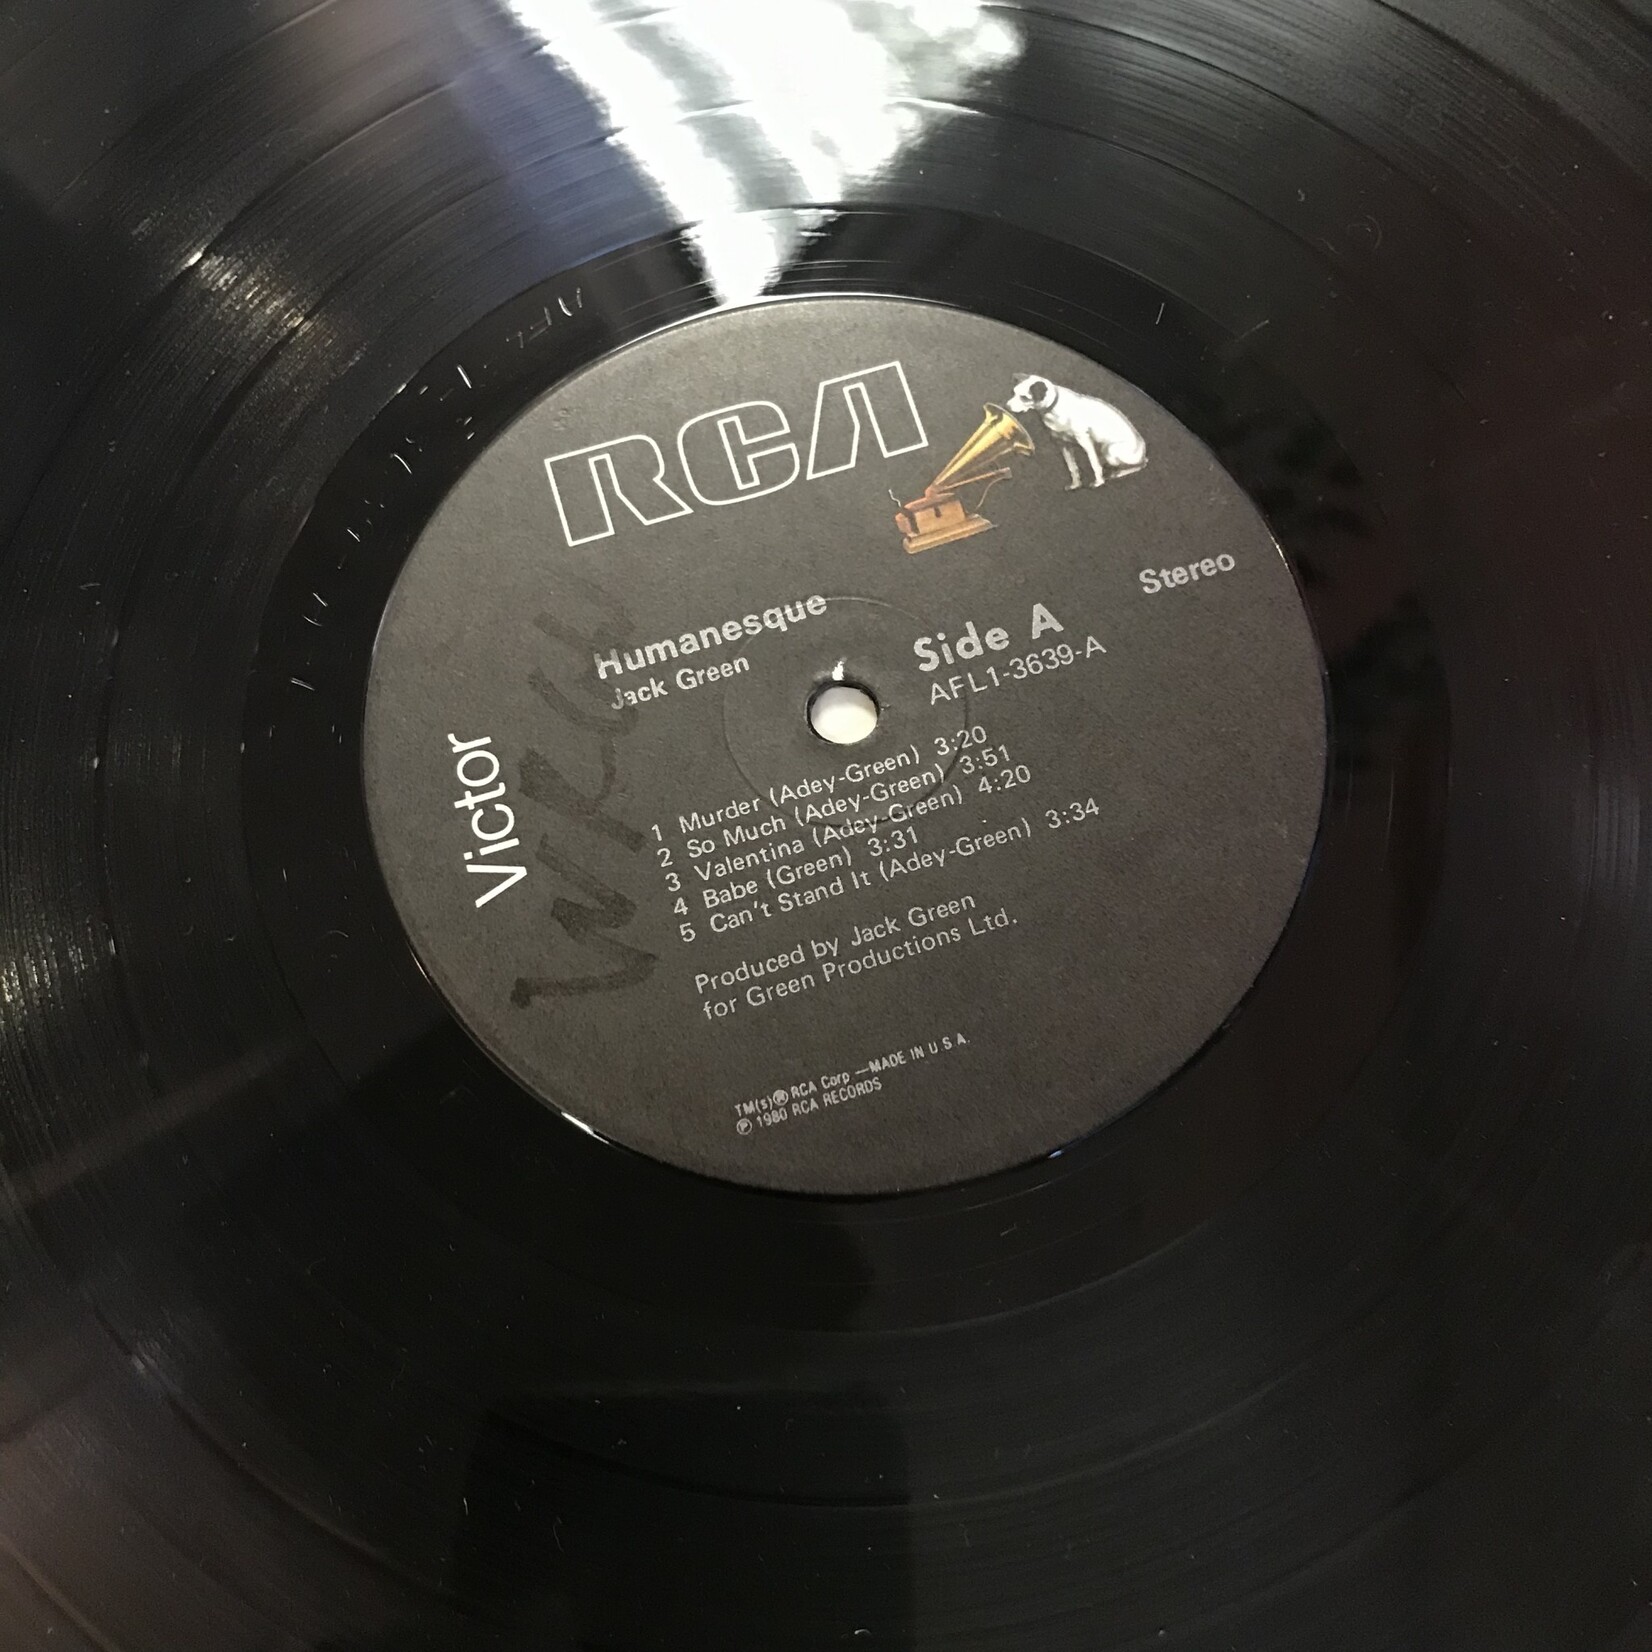 Jack Green - Humanesque - AFL1 3639 - Vinyl LP (USED)